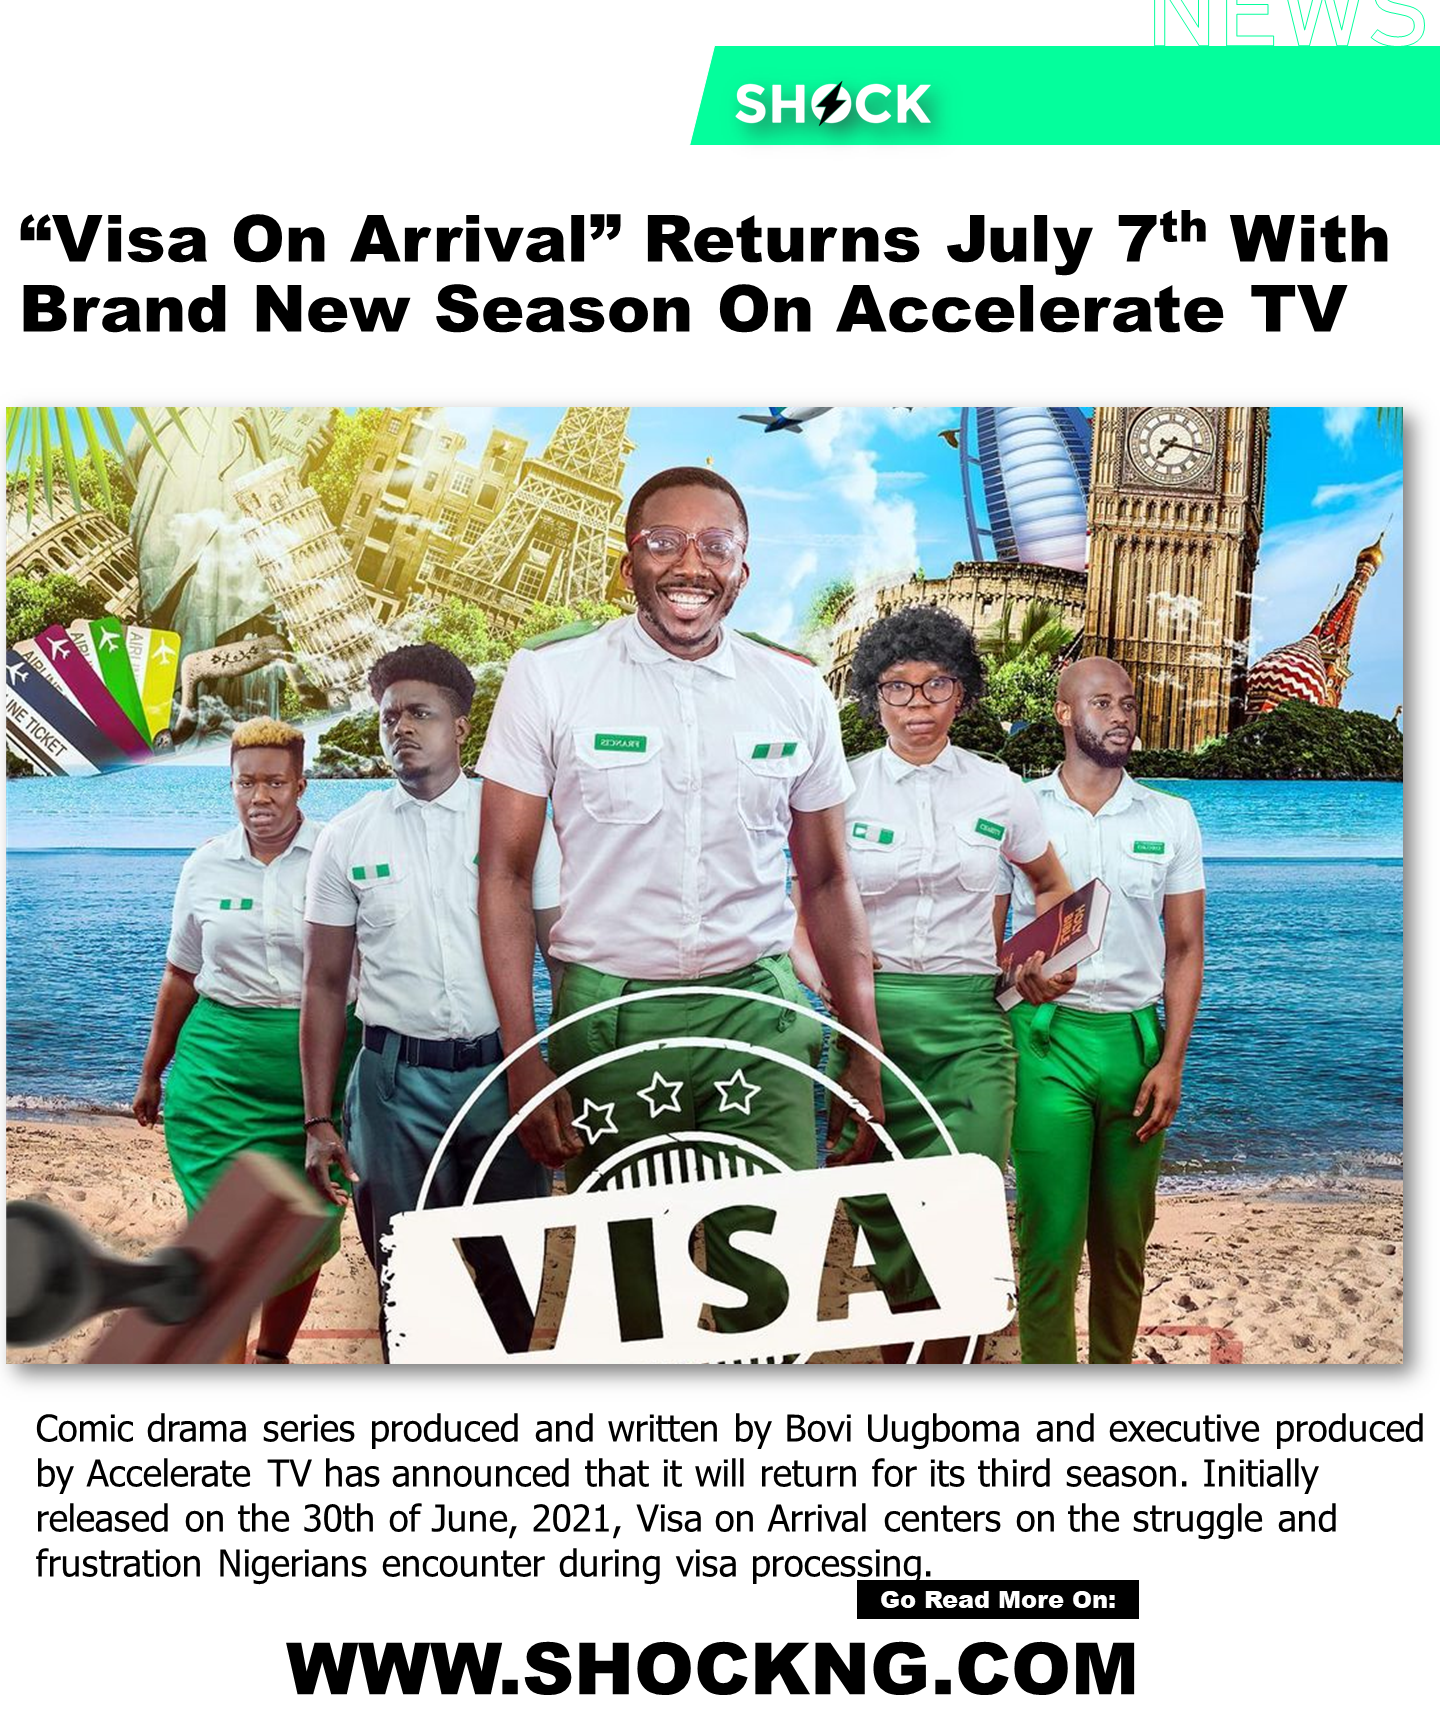 visa on arrival - Visa on Arrival Renewed For Season 3